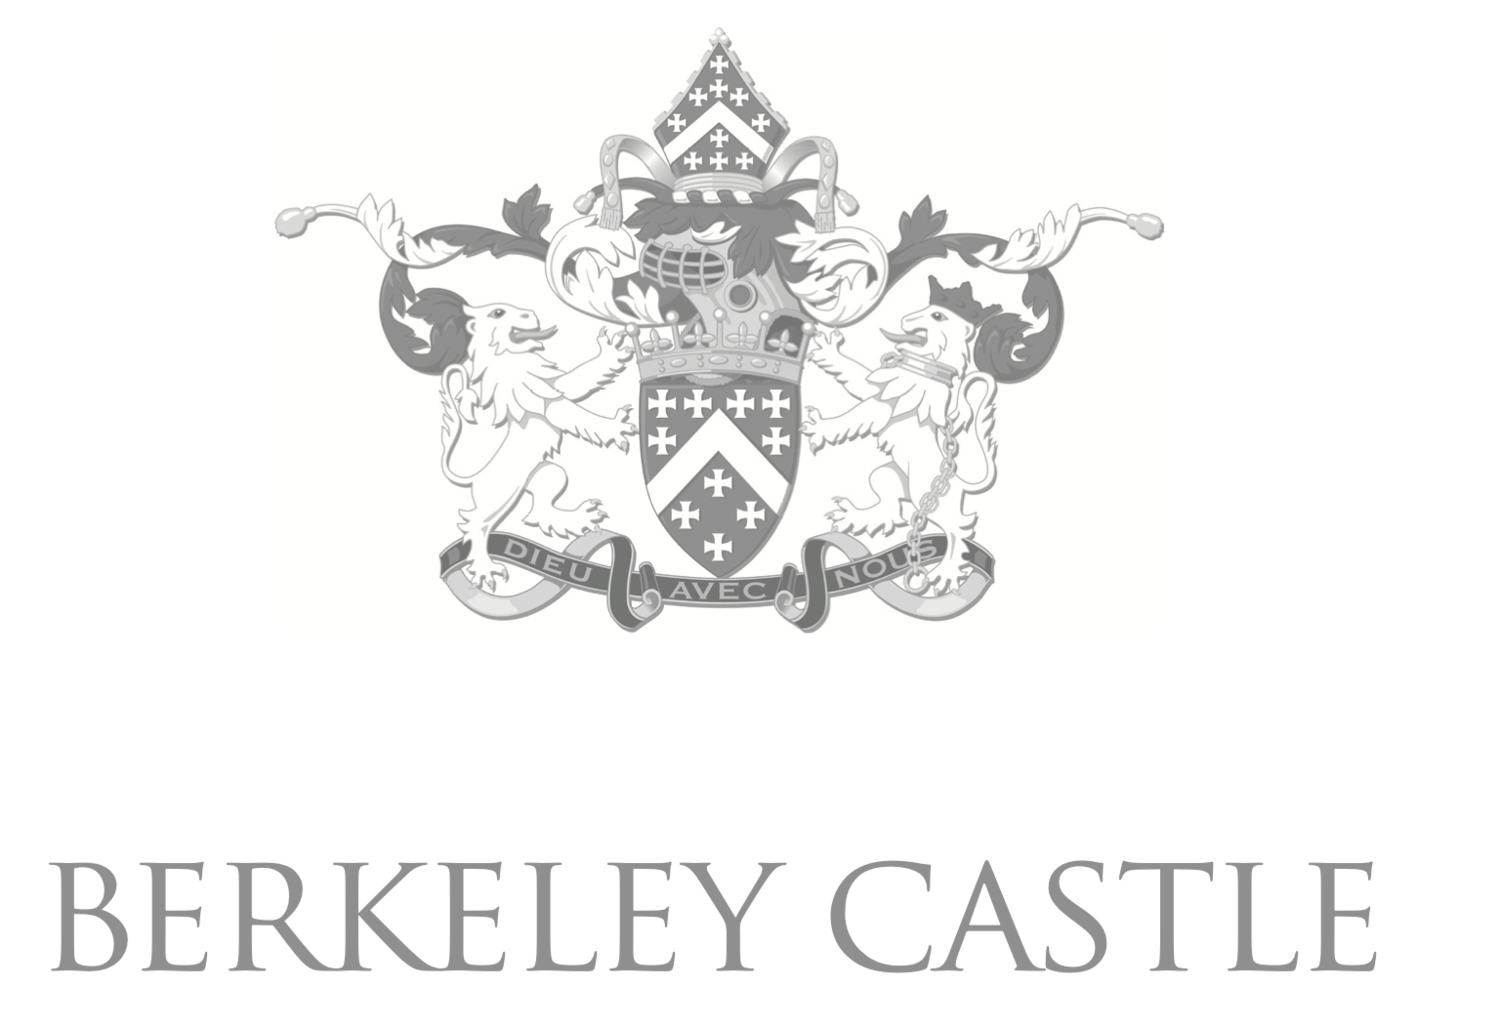 Berkeley Castle Weddings